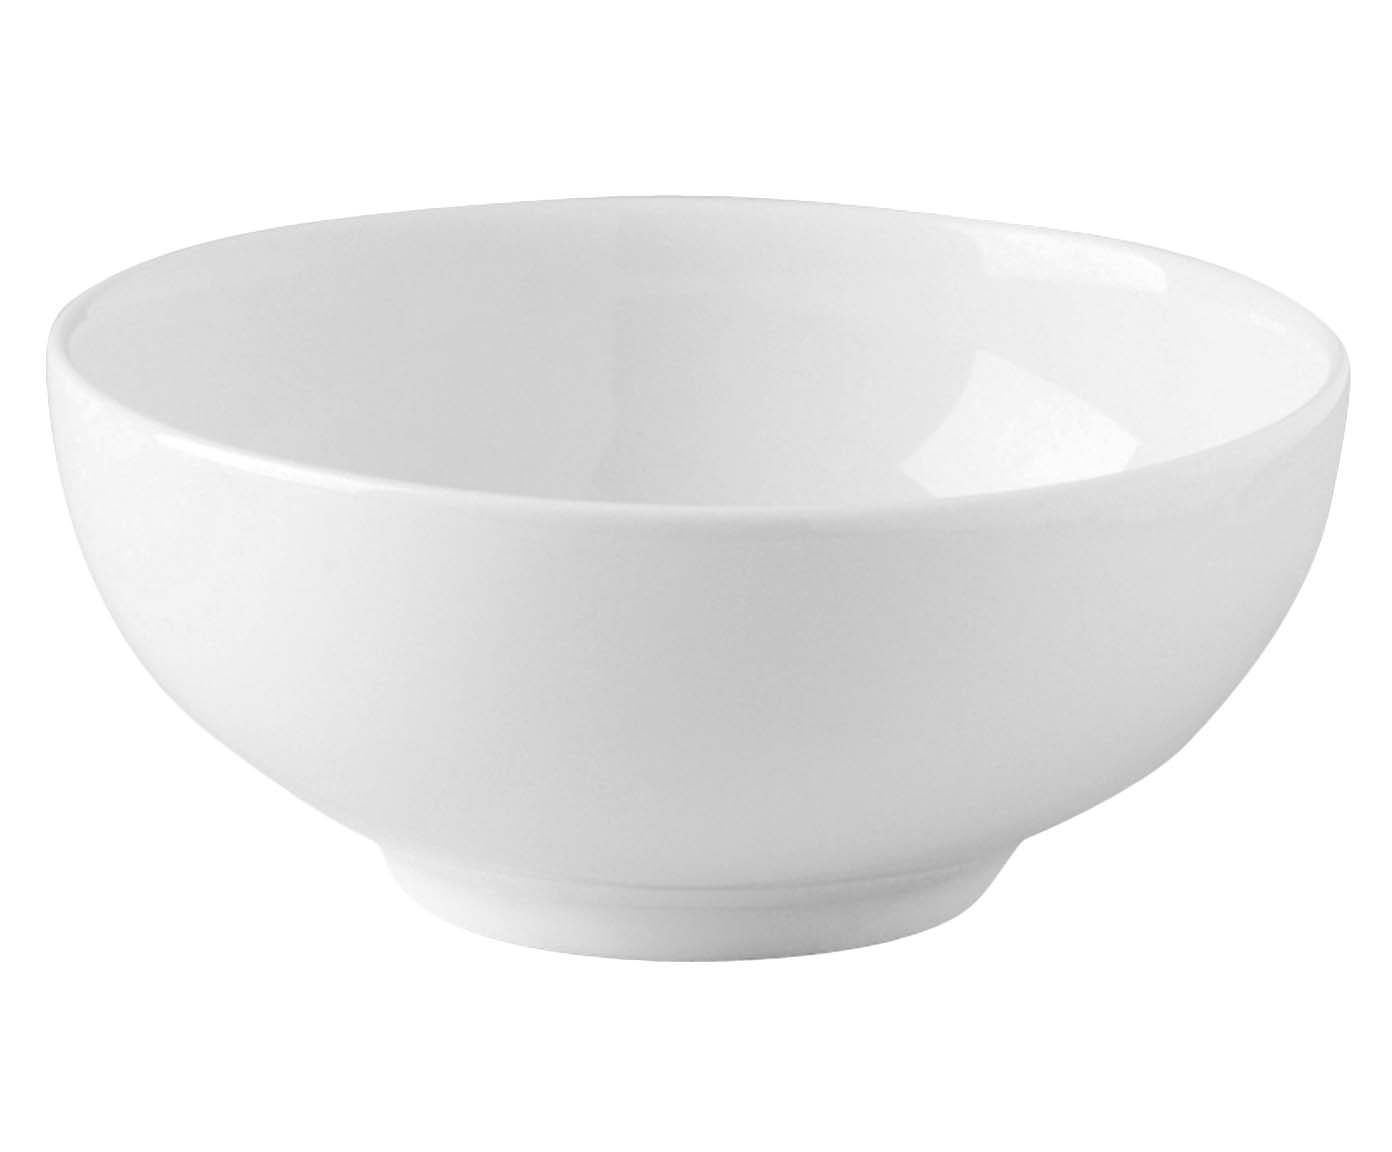 Bowl para macarrão optica | Westwing.com.br